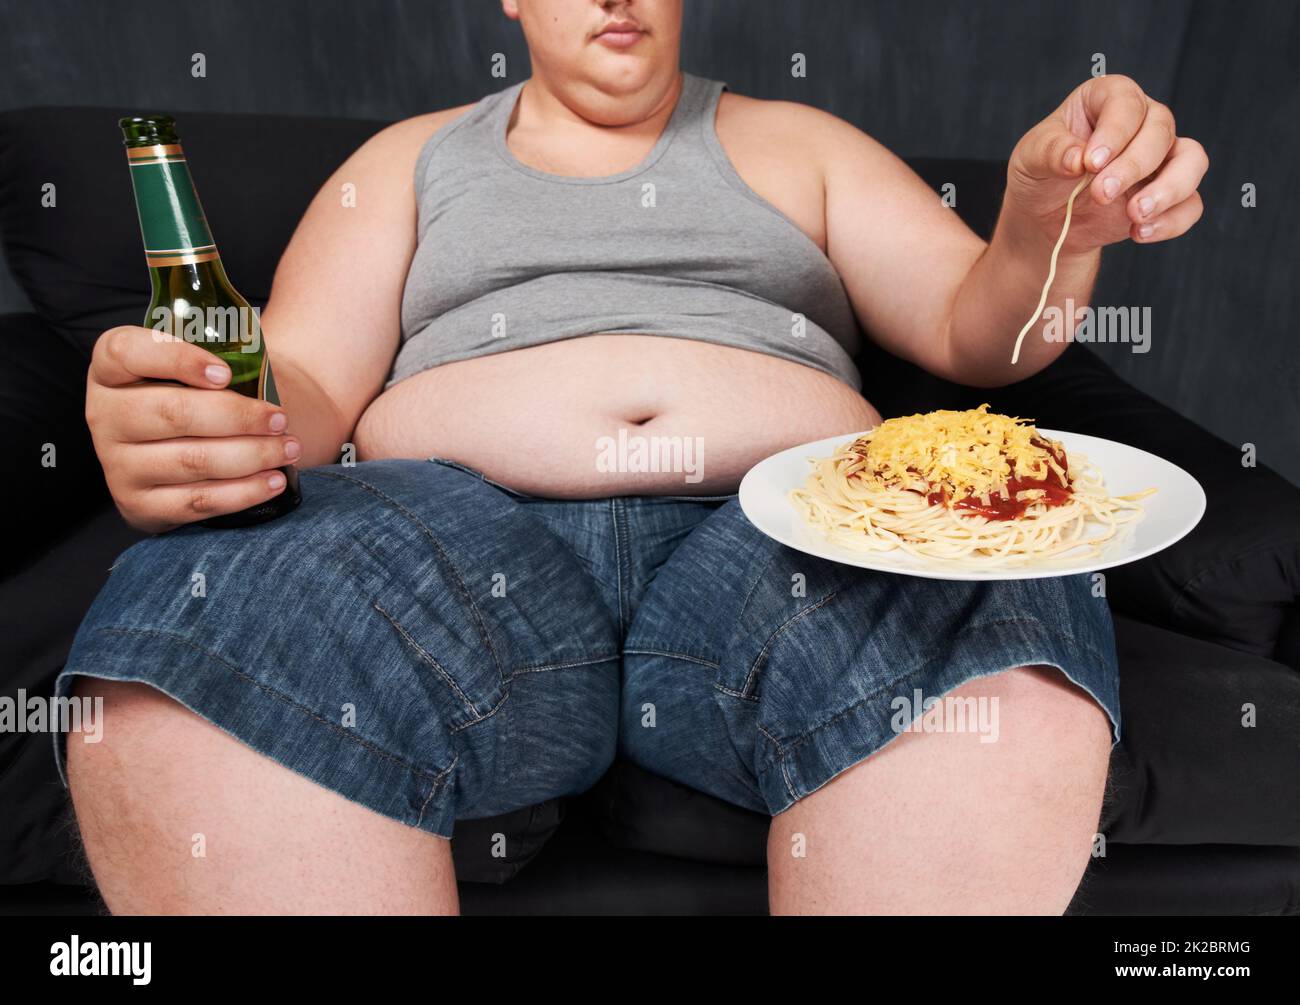 Wer braucht eine Gabel. Eine ausgeschnittene Aufnahme eines übergewichtigen jungen Mannes, der auf einem Sofa sitzt und Spaghetti mit den Händen isst. Stockfoto